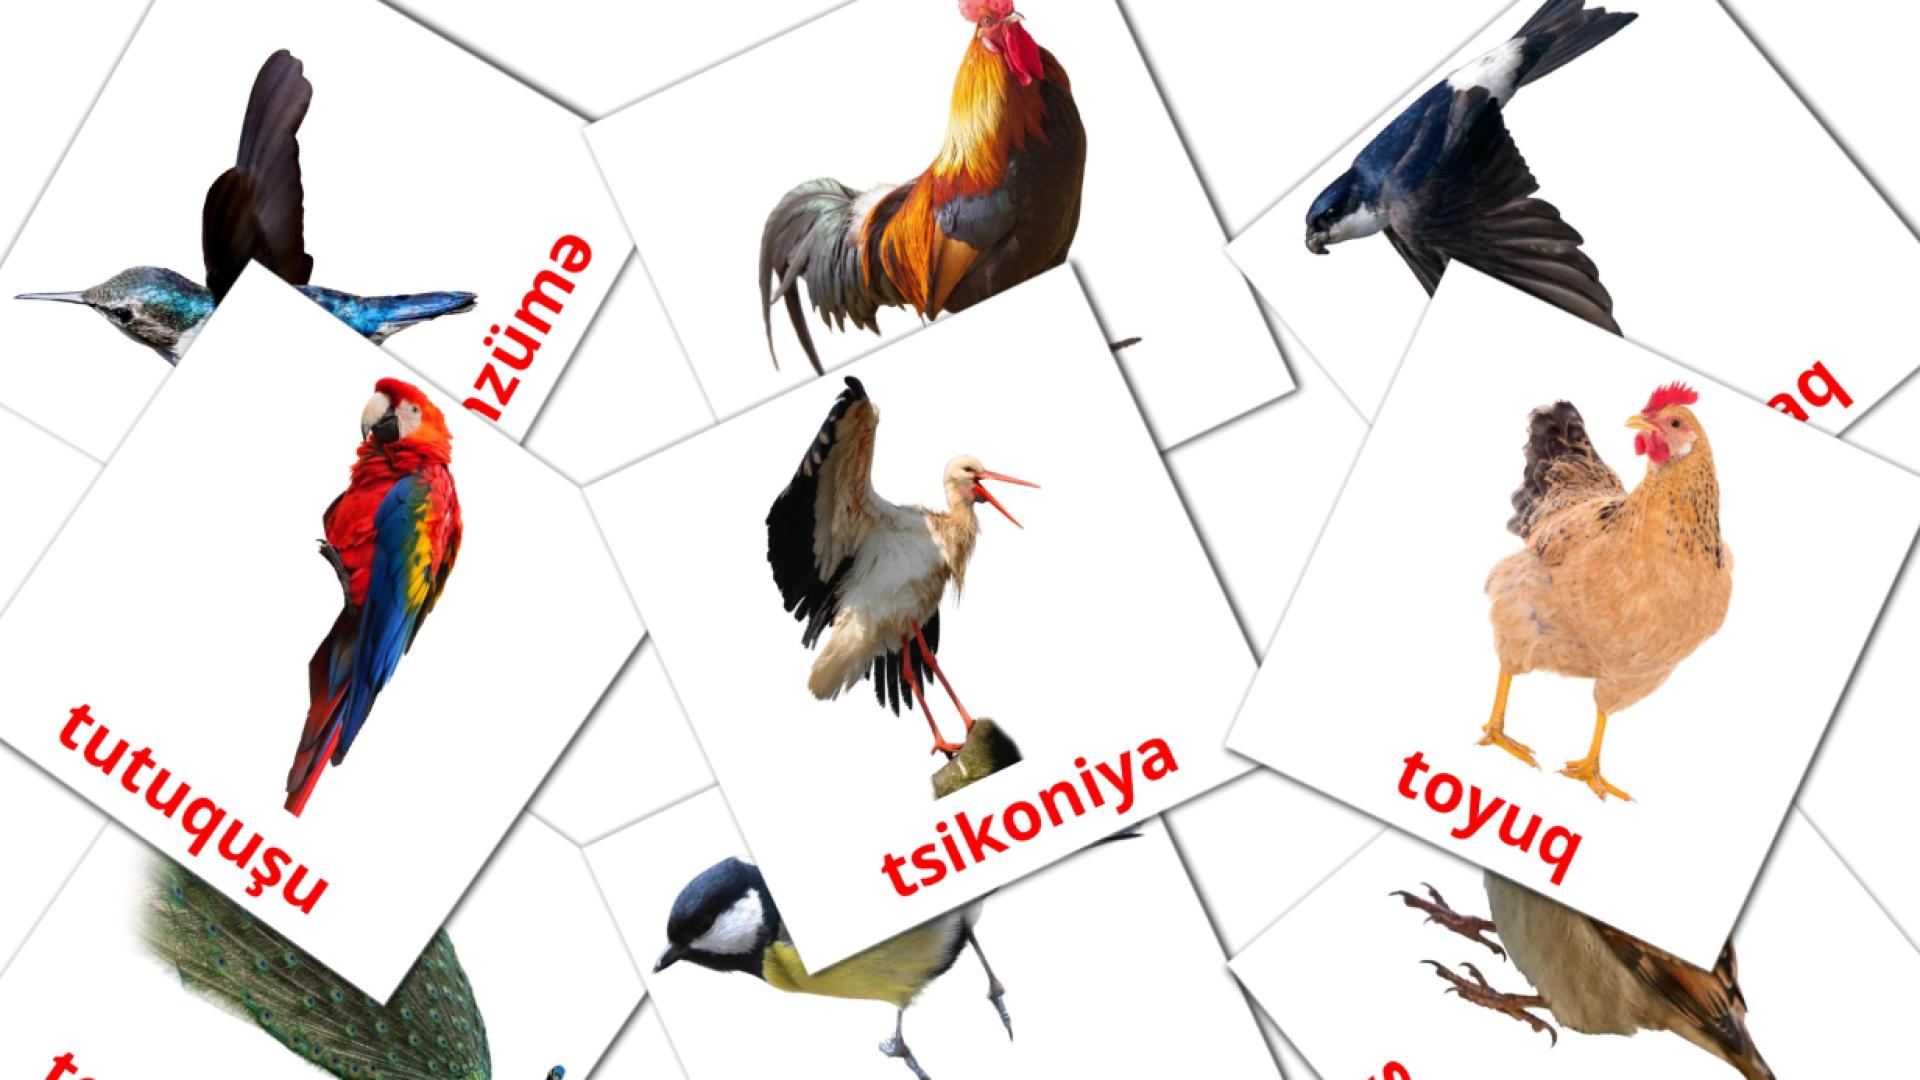 Quşlar azerbeidzjaans woordenschat flashcards